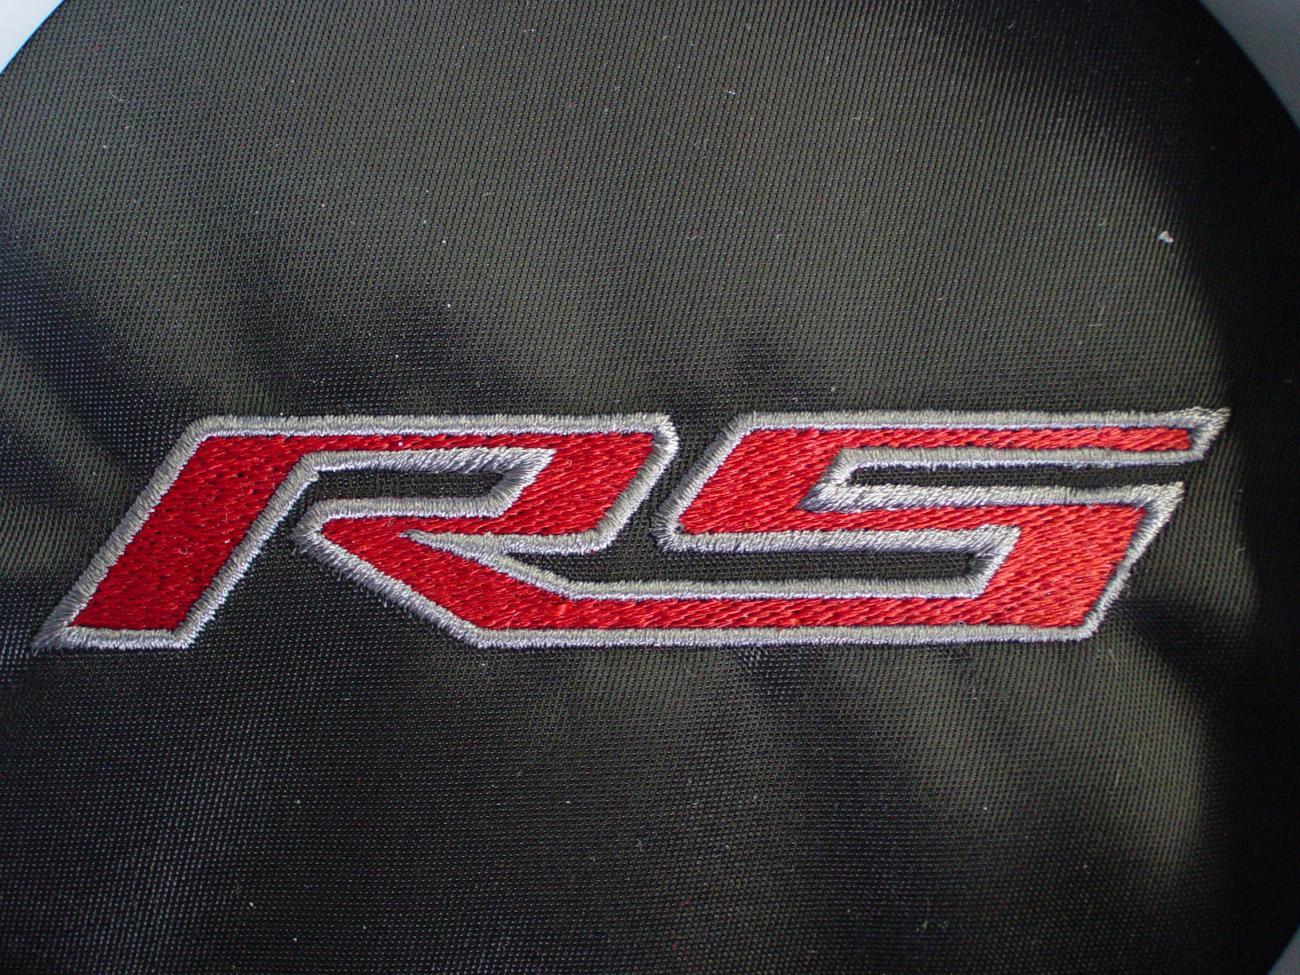 Camaro RS Logo - RS emblem - Camaro5 Chevy Camaro Forum / Camaro ZL1, SS and V6 ...